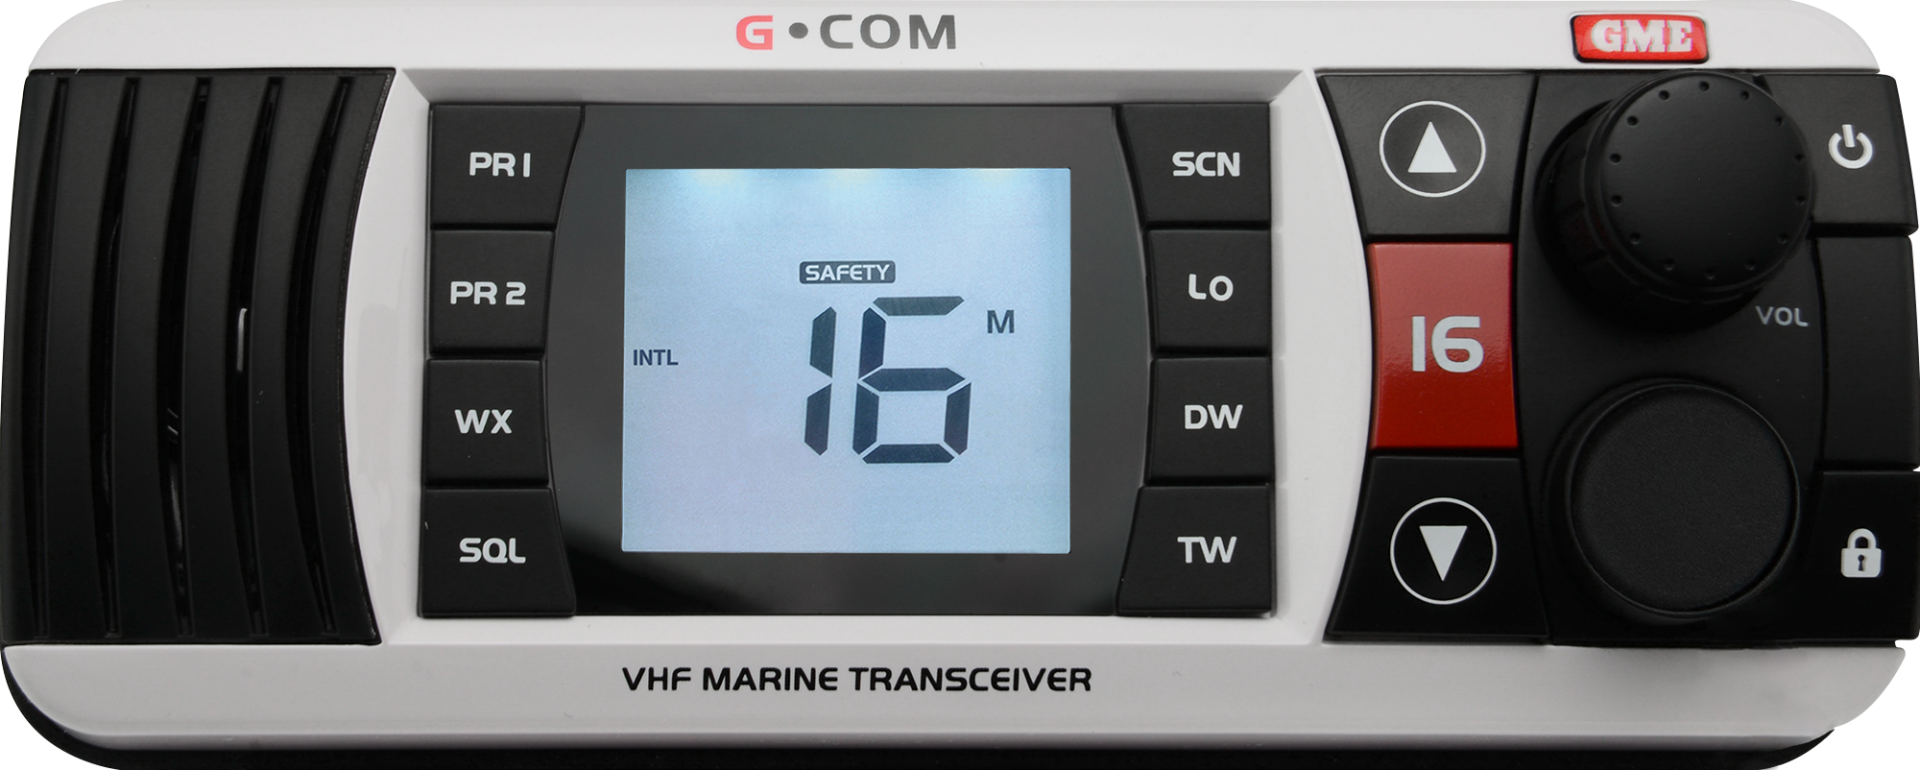 GX700W - VHF Marine Radio - White